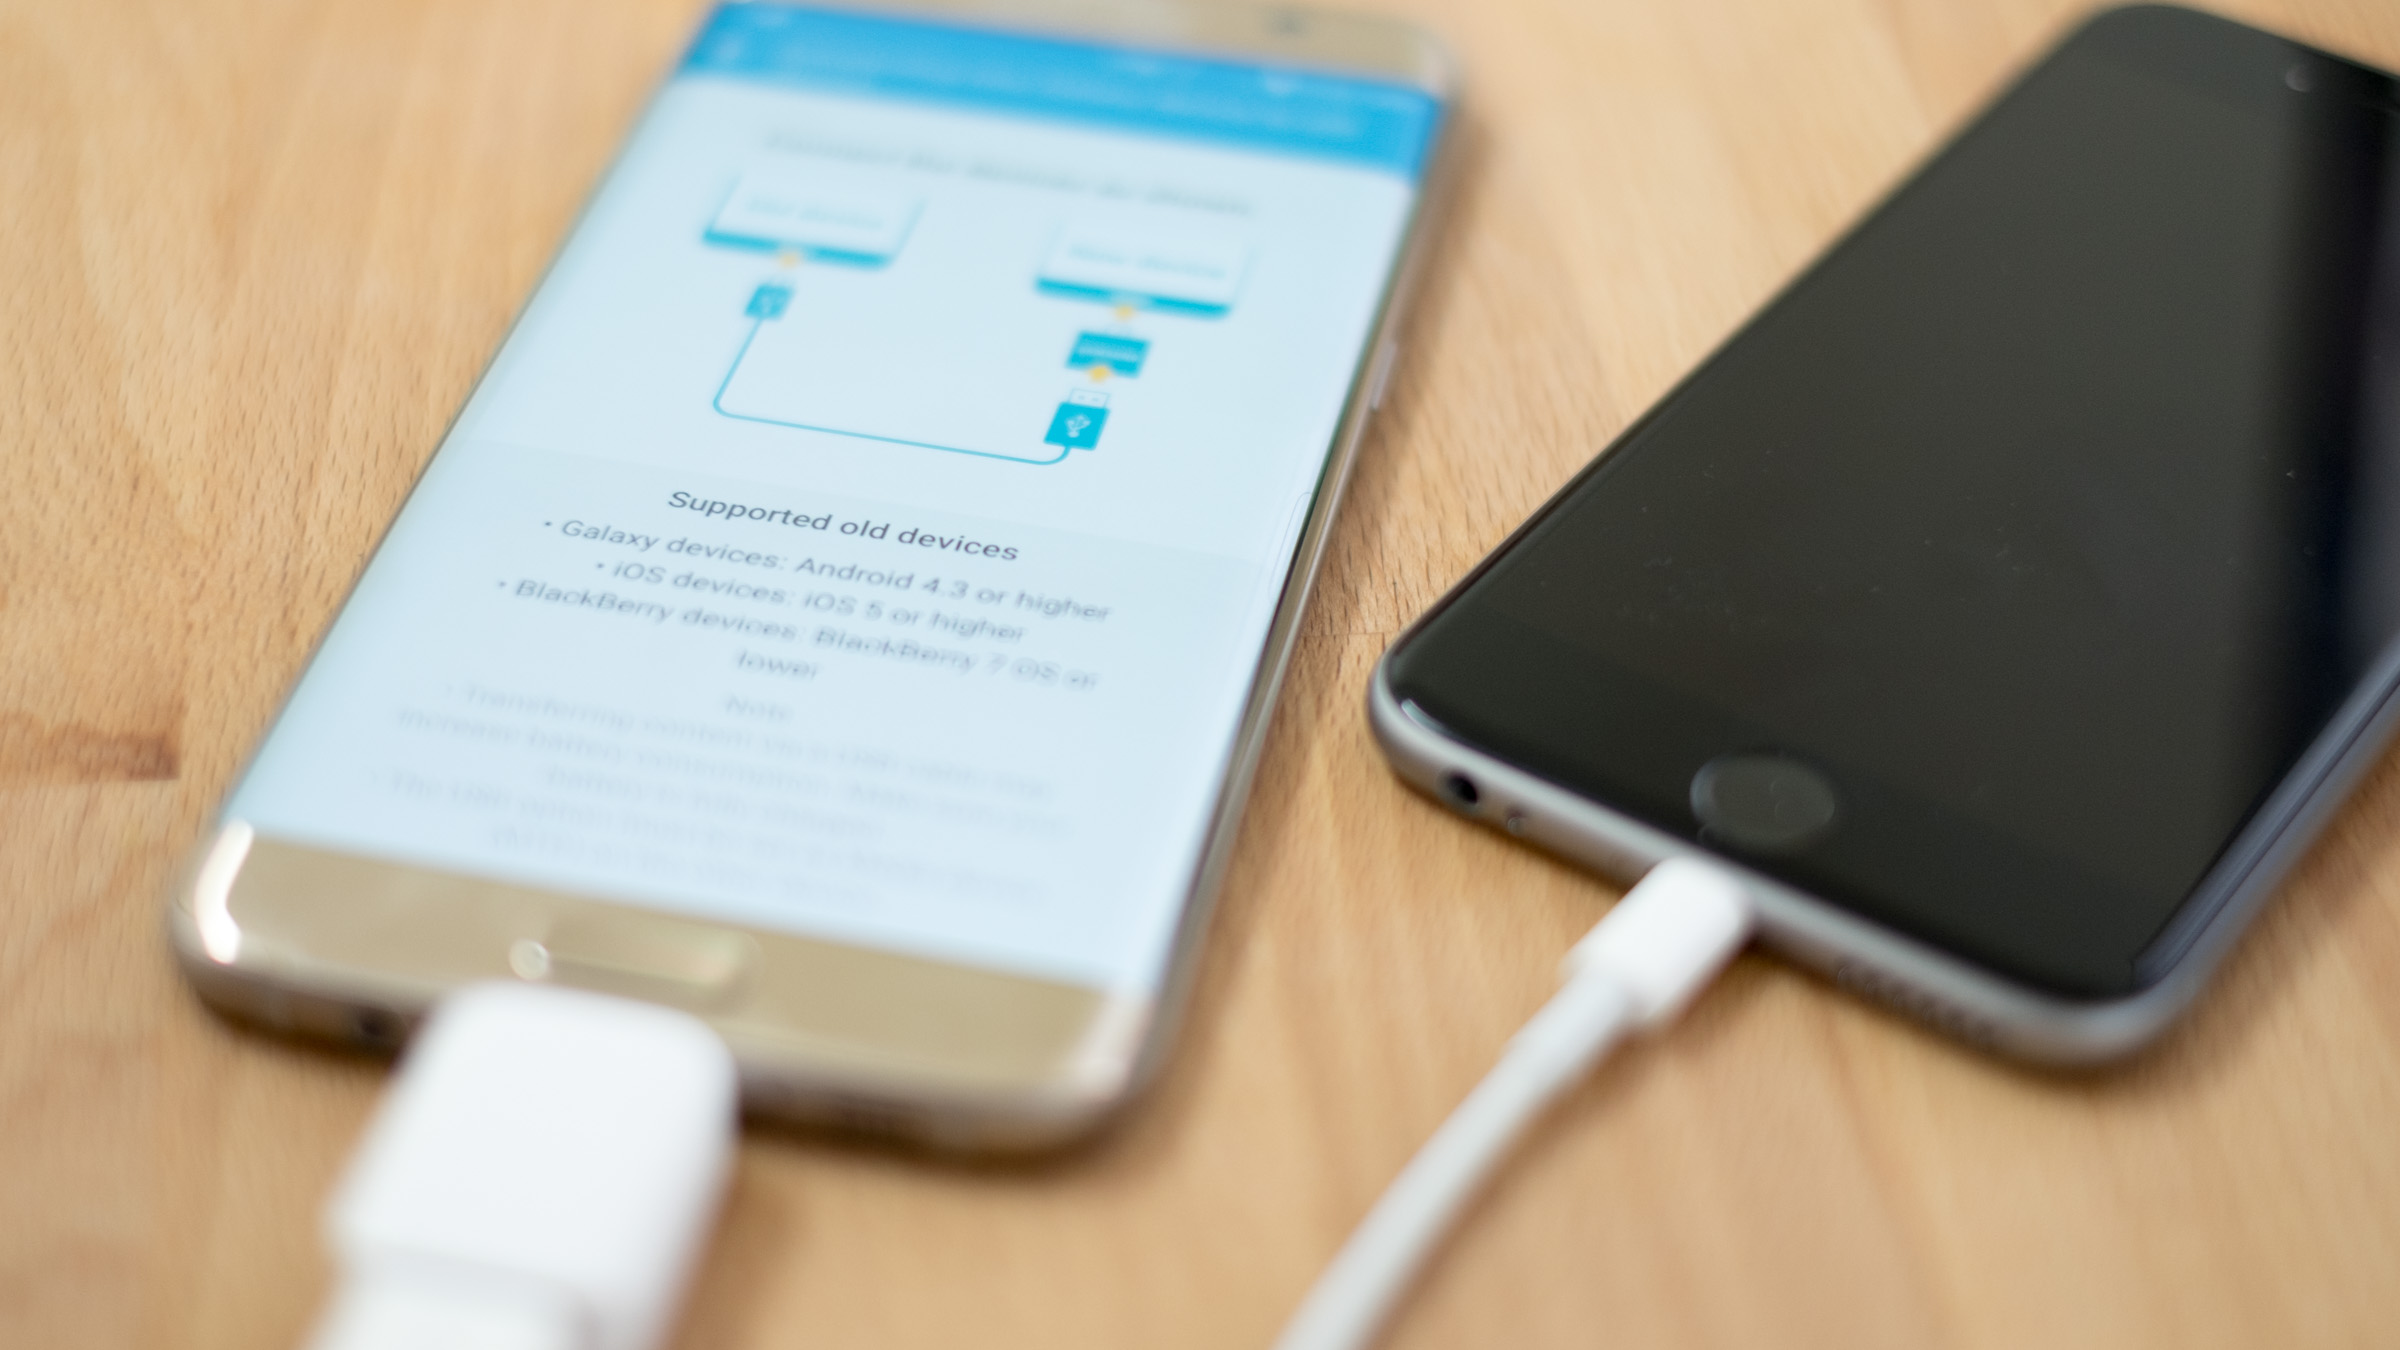 Người dùng có thể dễ dàng chuyển dữ liệu từ iPhone sang Galaxy S7 bằng Smart Switch - Ảnh chụp từ CNET